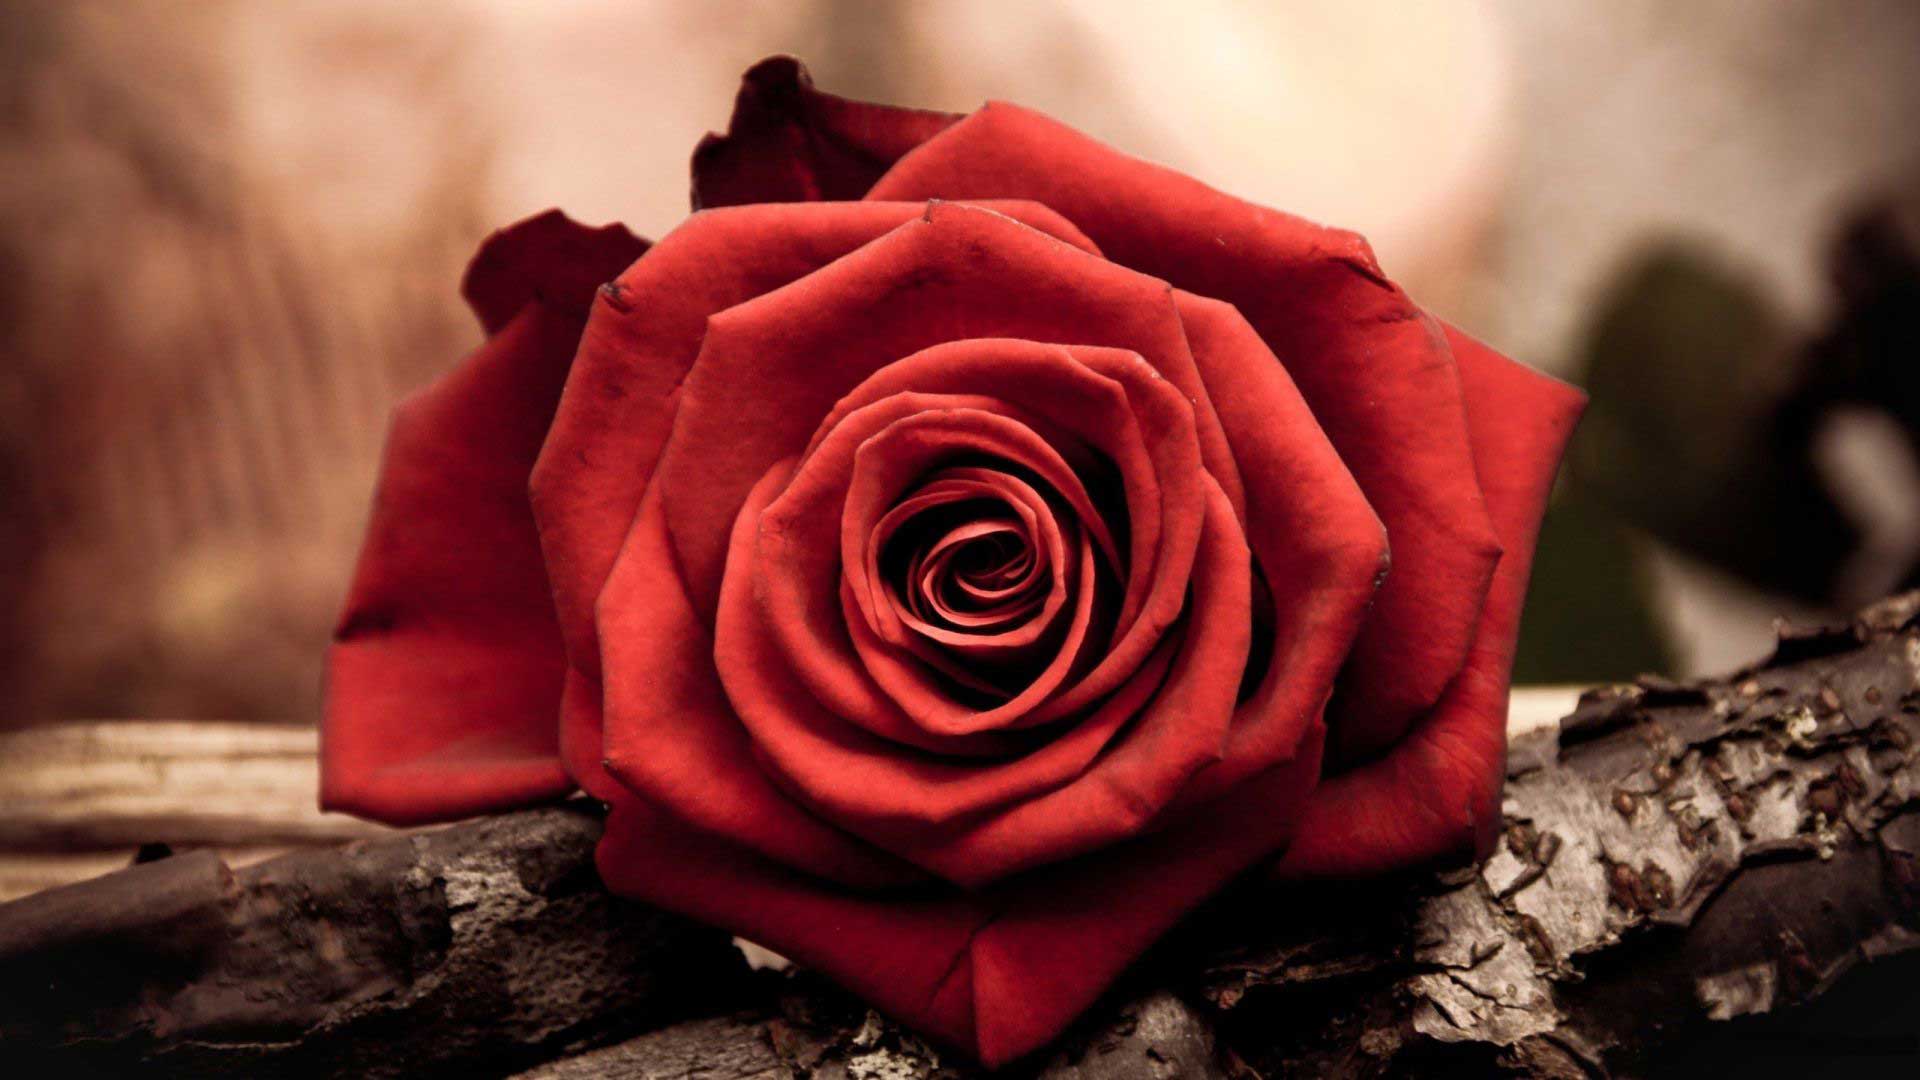 عکس گل رز قرمز با کیفیت عالی